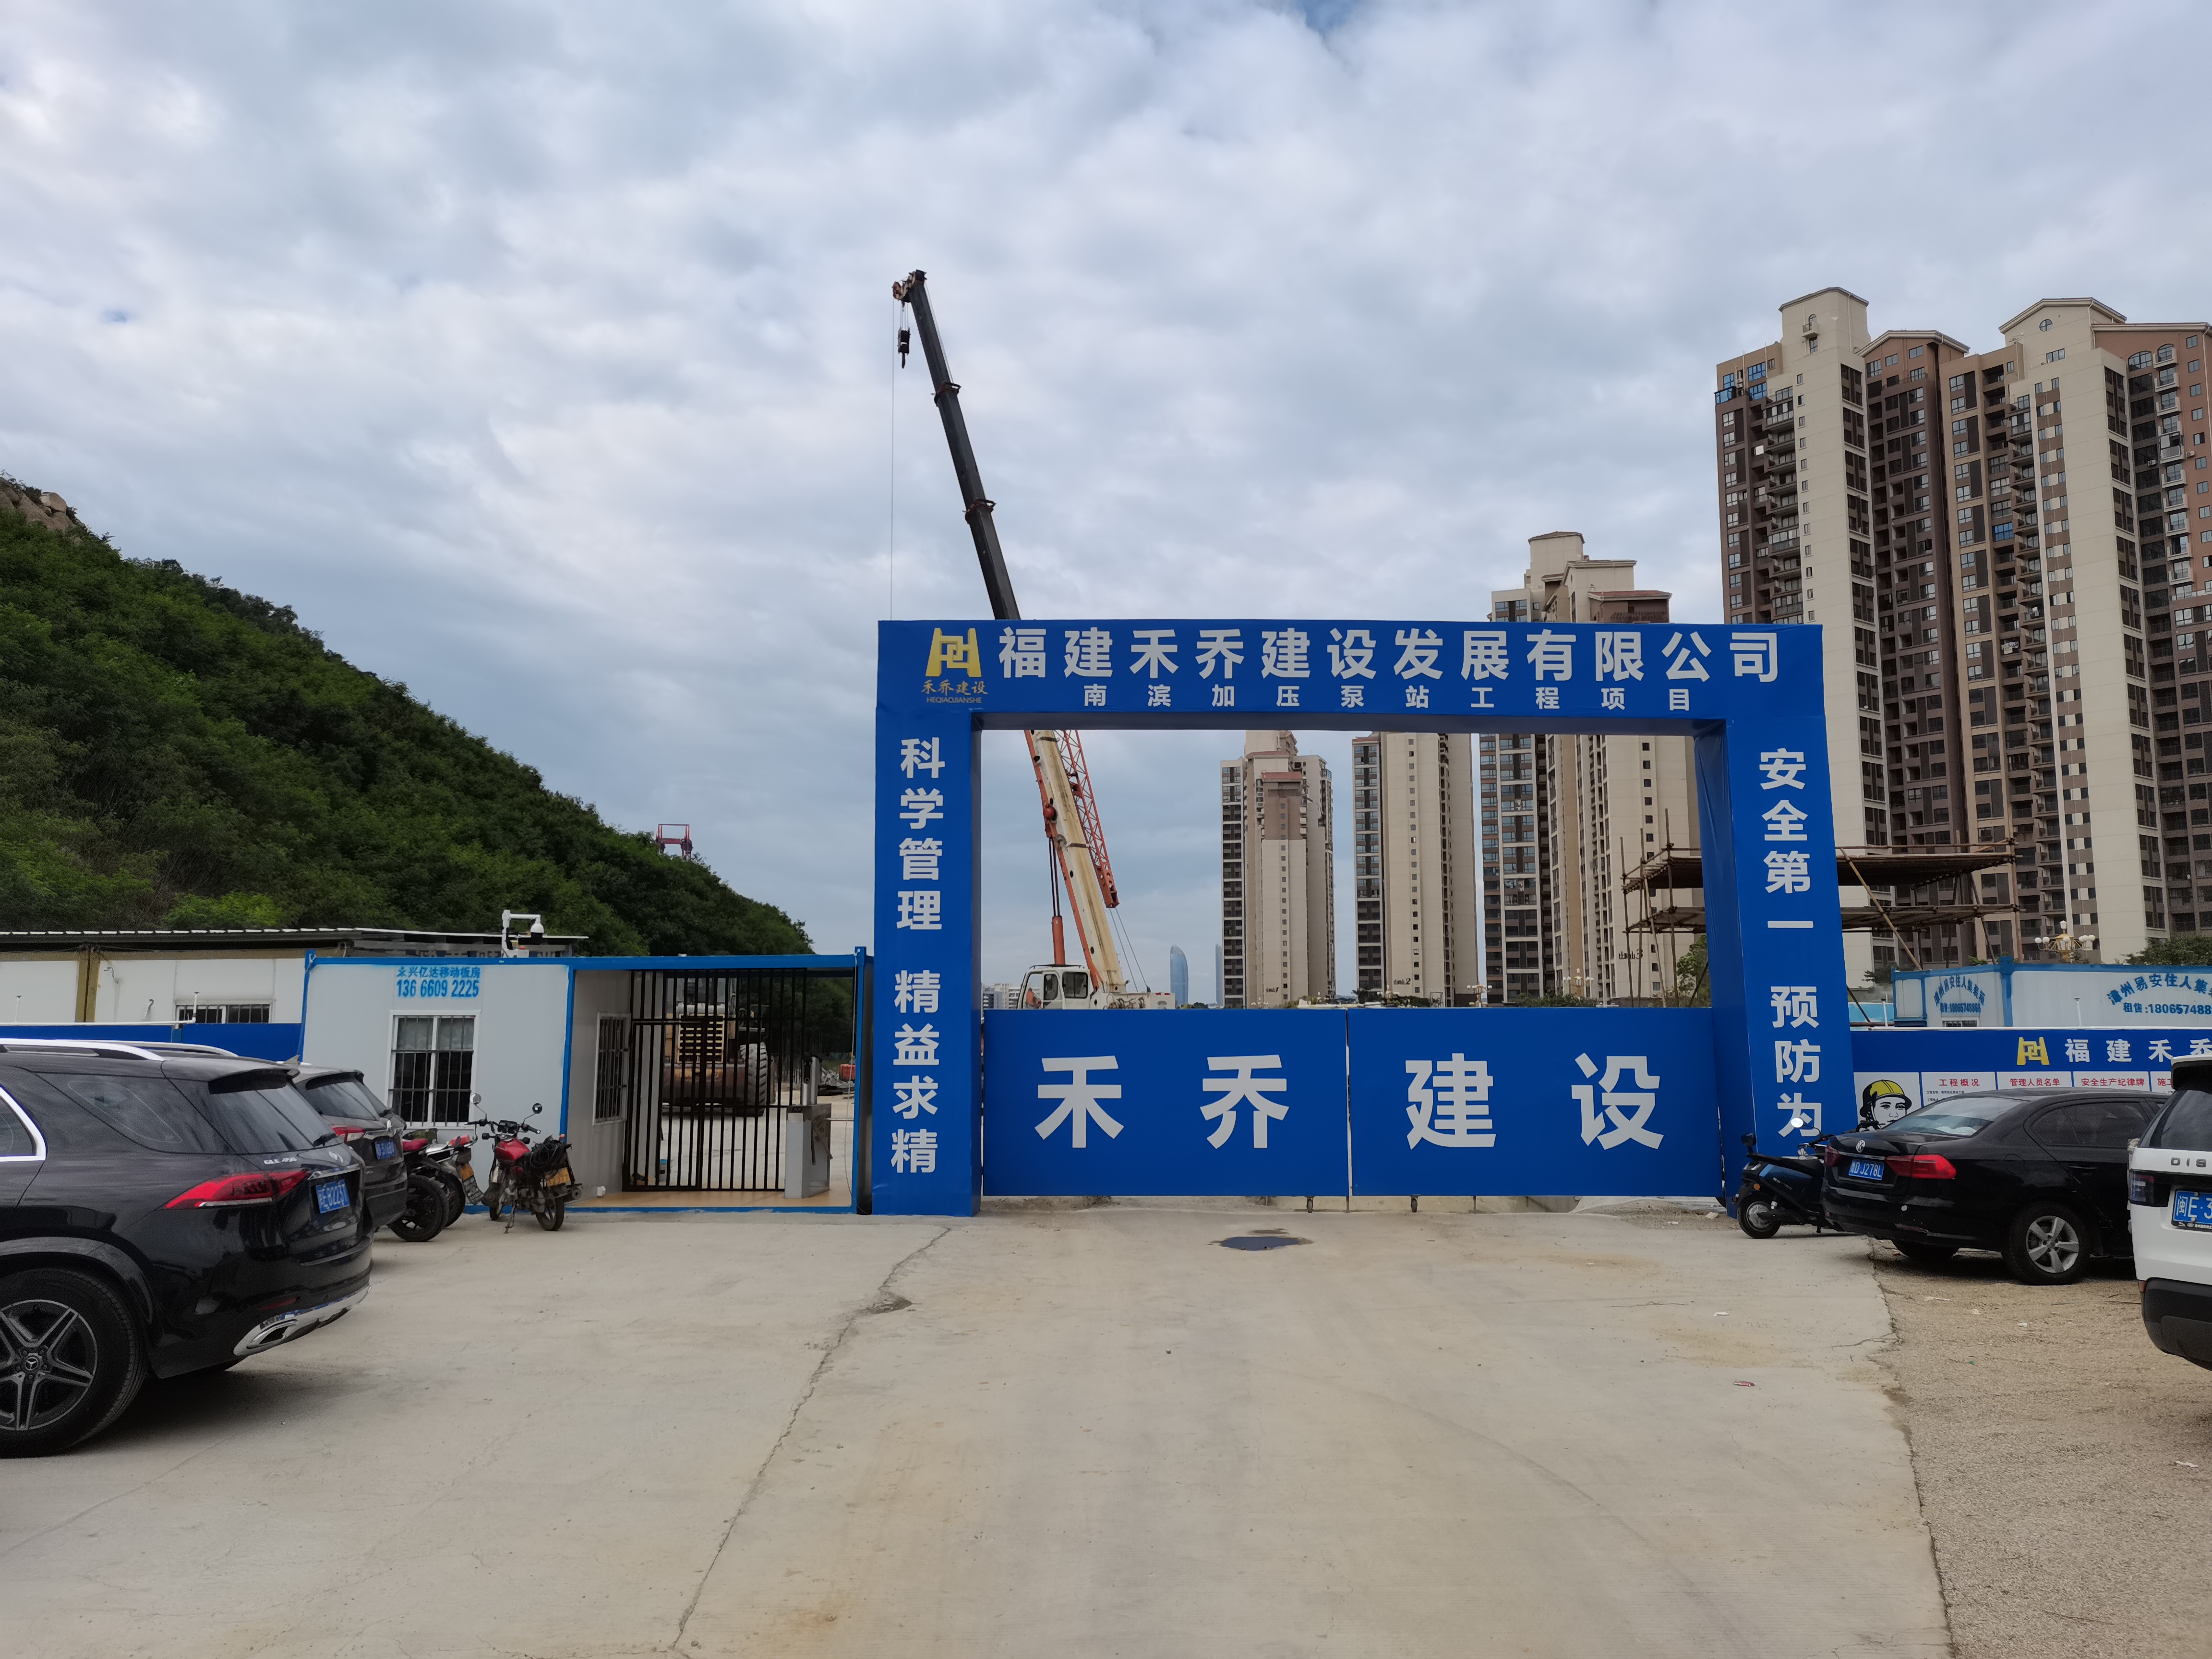 我司承建的漳州开发区南滨加压泵站工程近日顺利开工